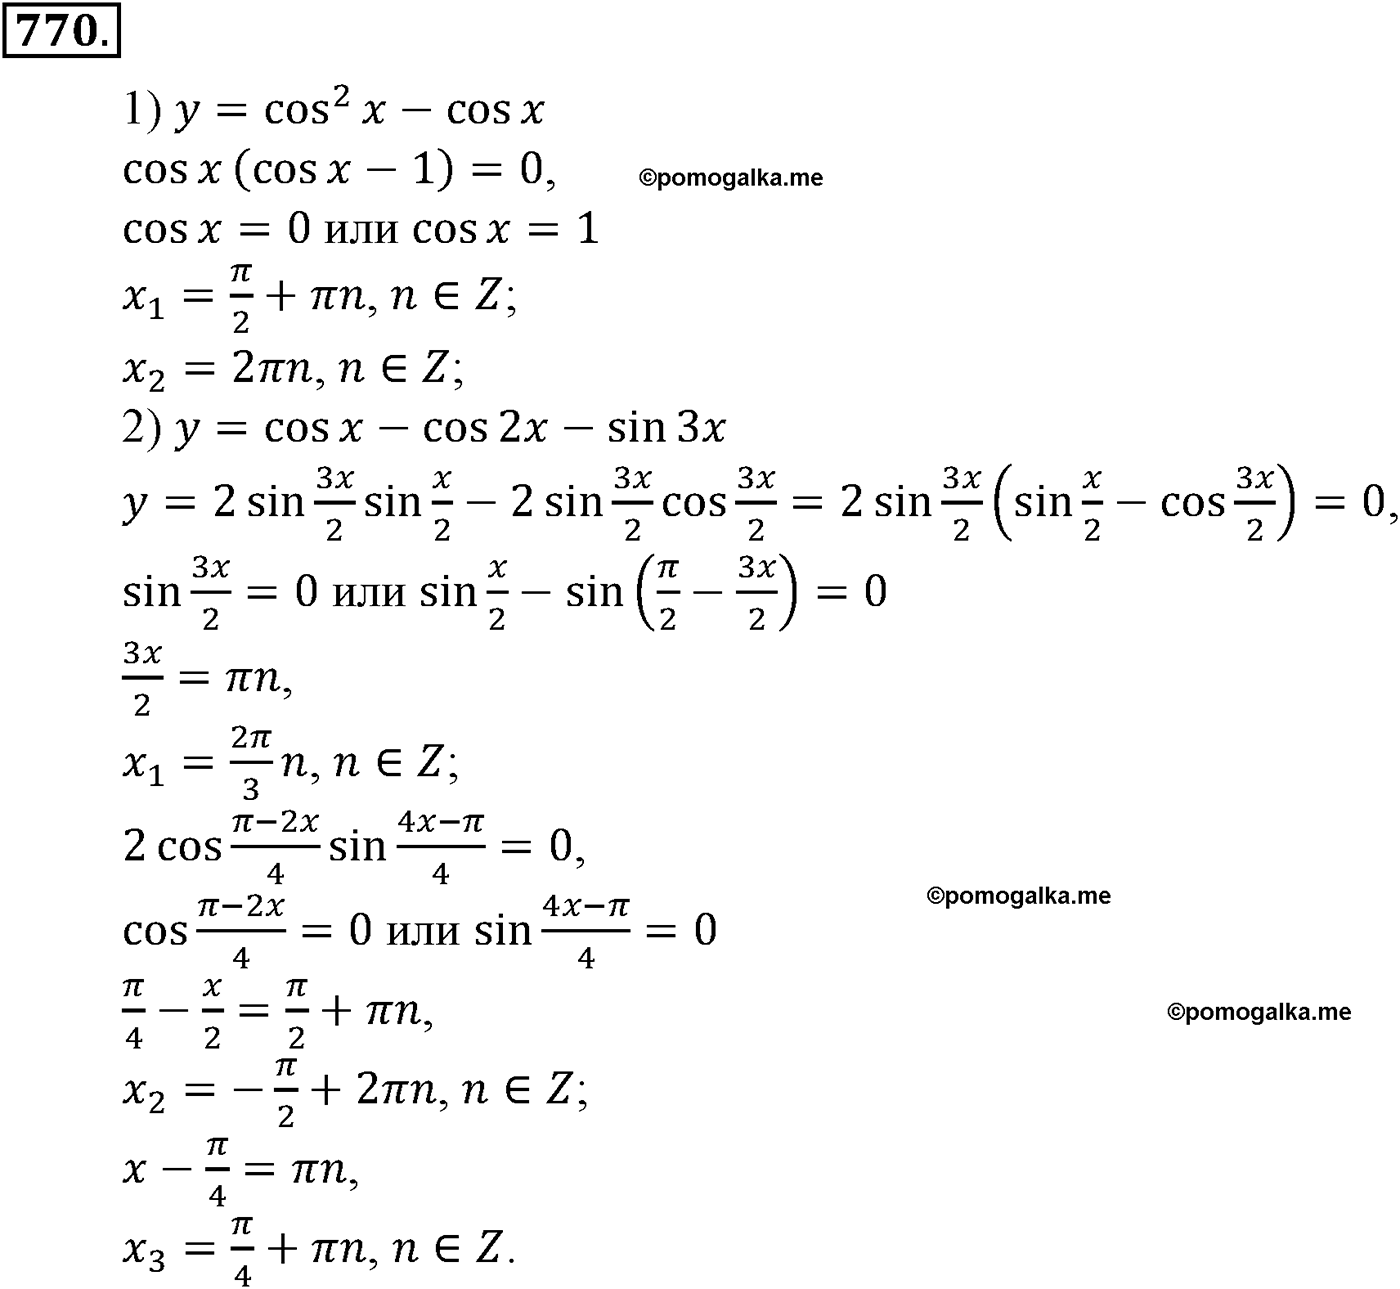 разбор задачи №770 по алгебре за 10-11 класс из учебника Алимова, Колягина